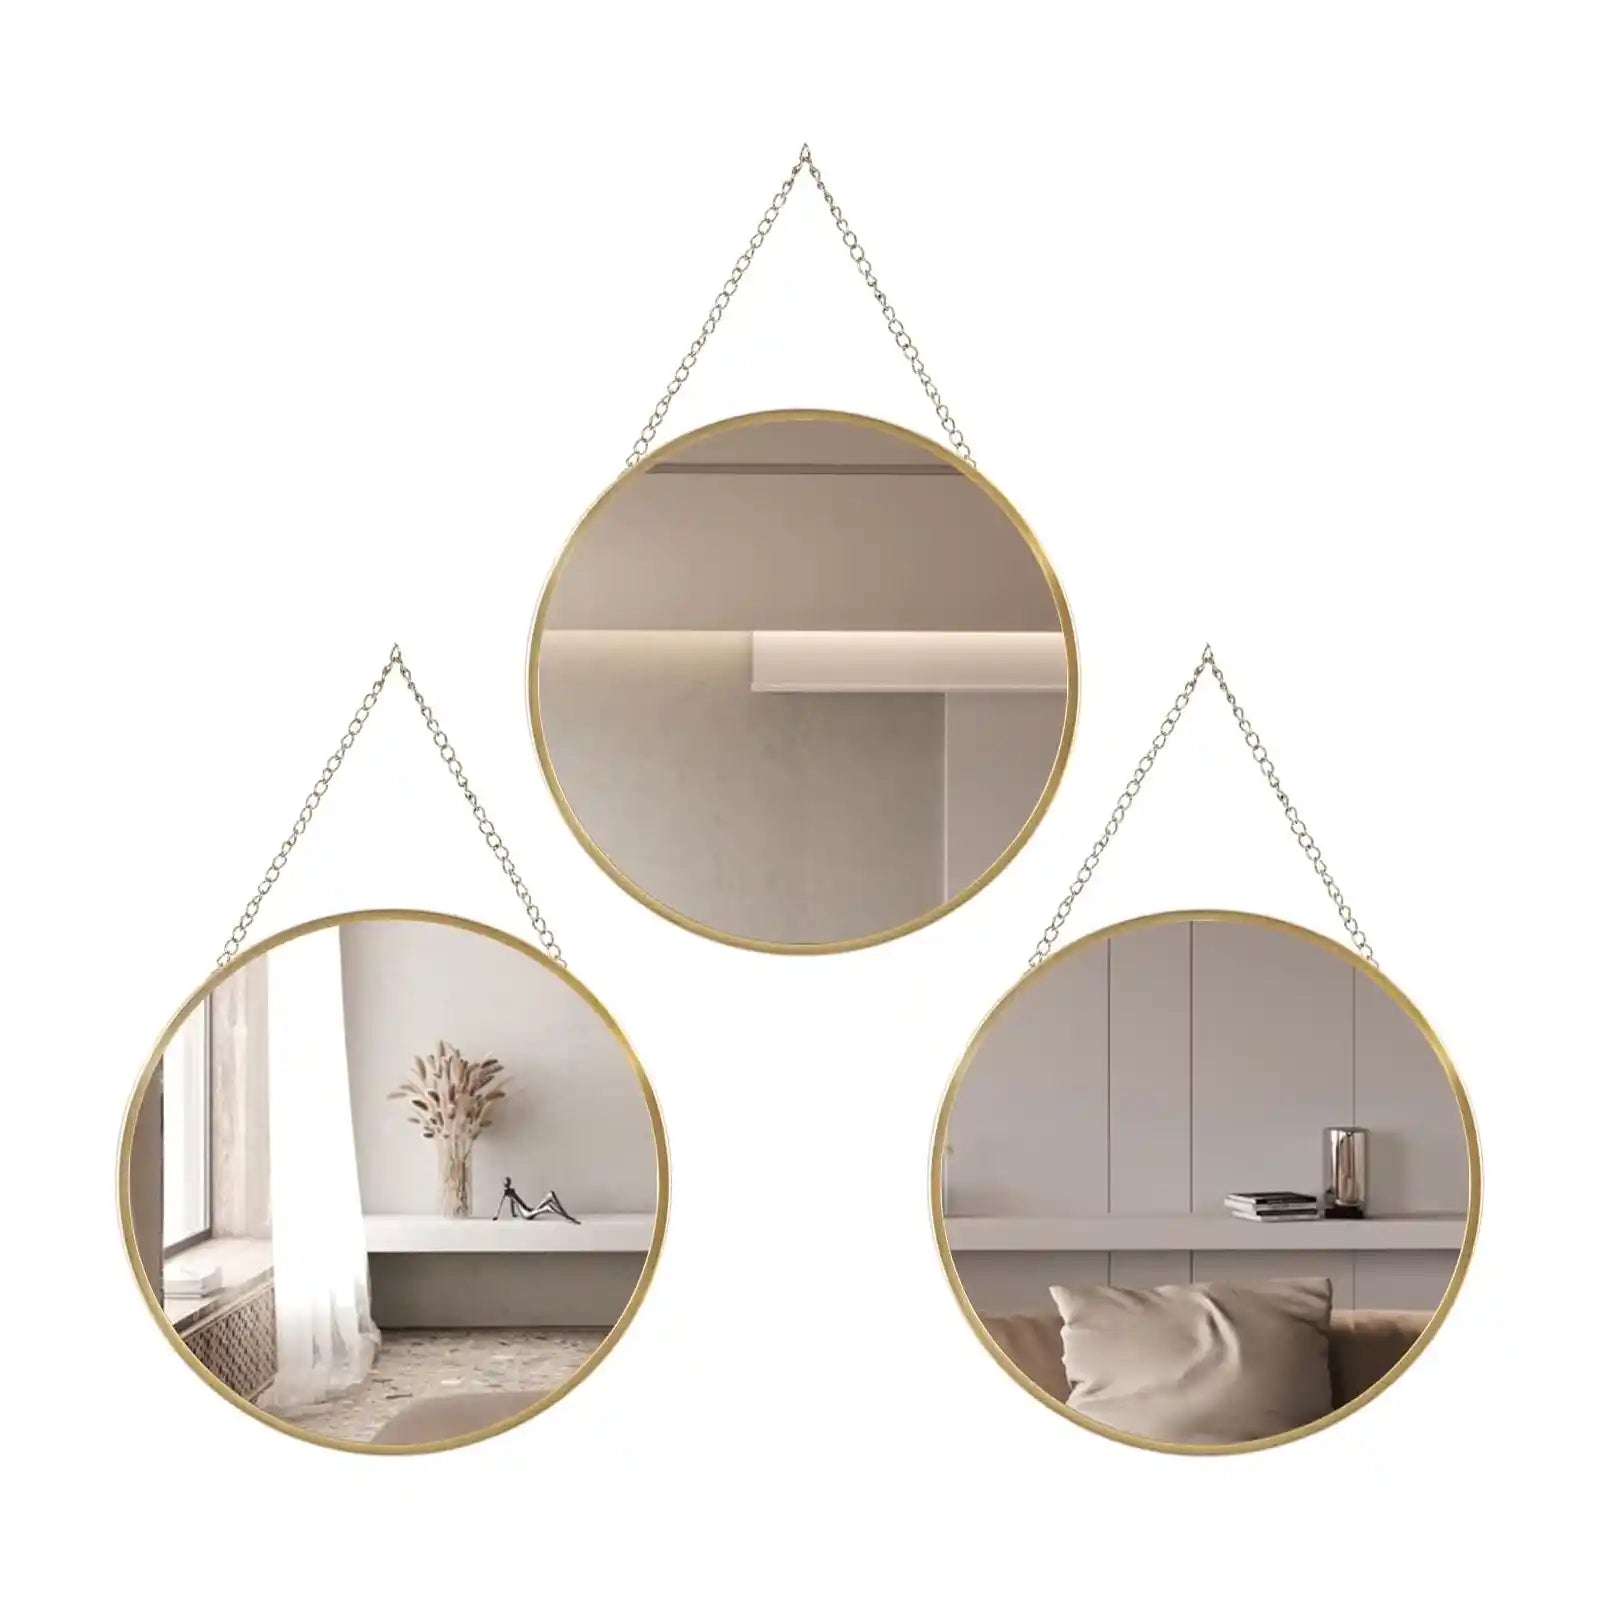 Espejo circular colgante para decoración de pared, espejo redondo dorado con cadena colgante para baño, dormitorio, tocador, sala de estar, entrada